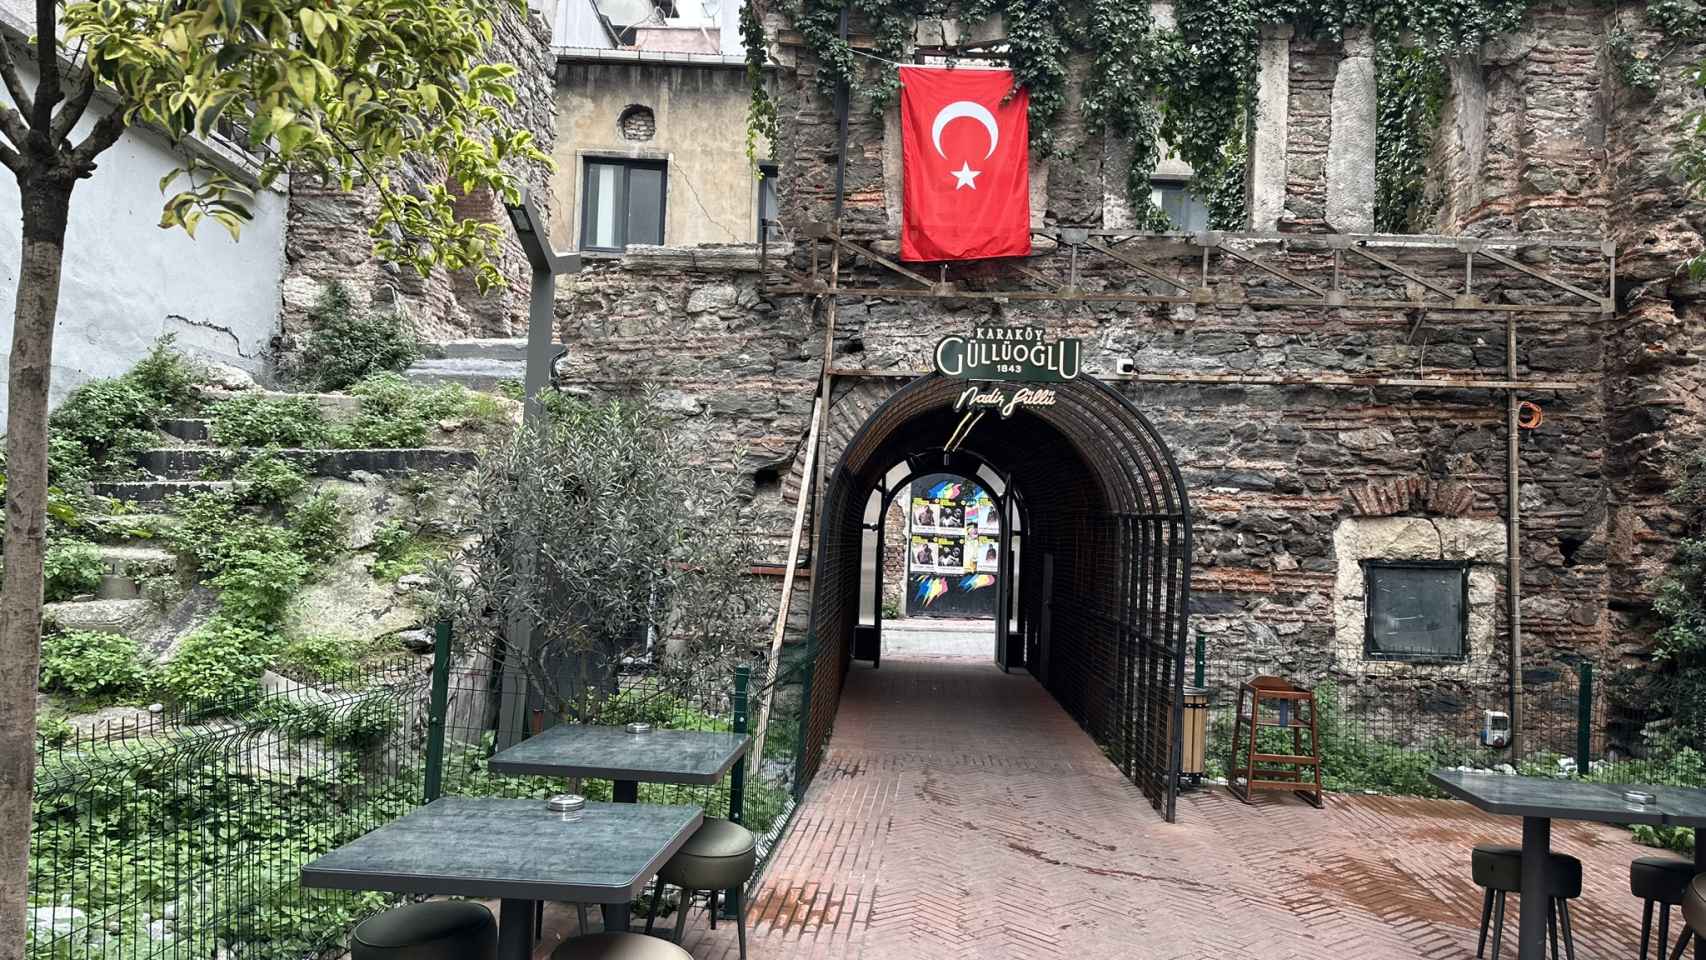 La tienda cuenta con una agradable terraza  y sus vistas a la puerta del Imperio Otomano.